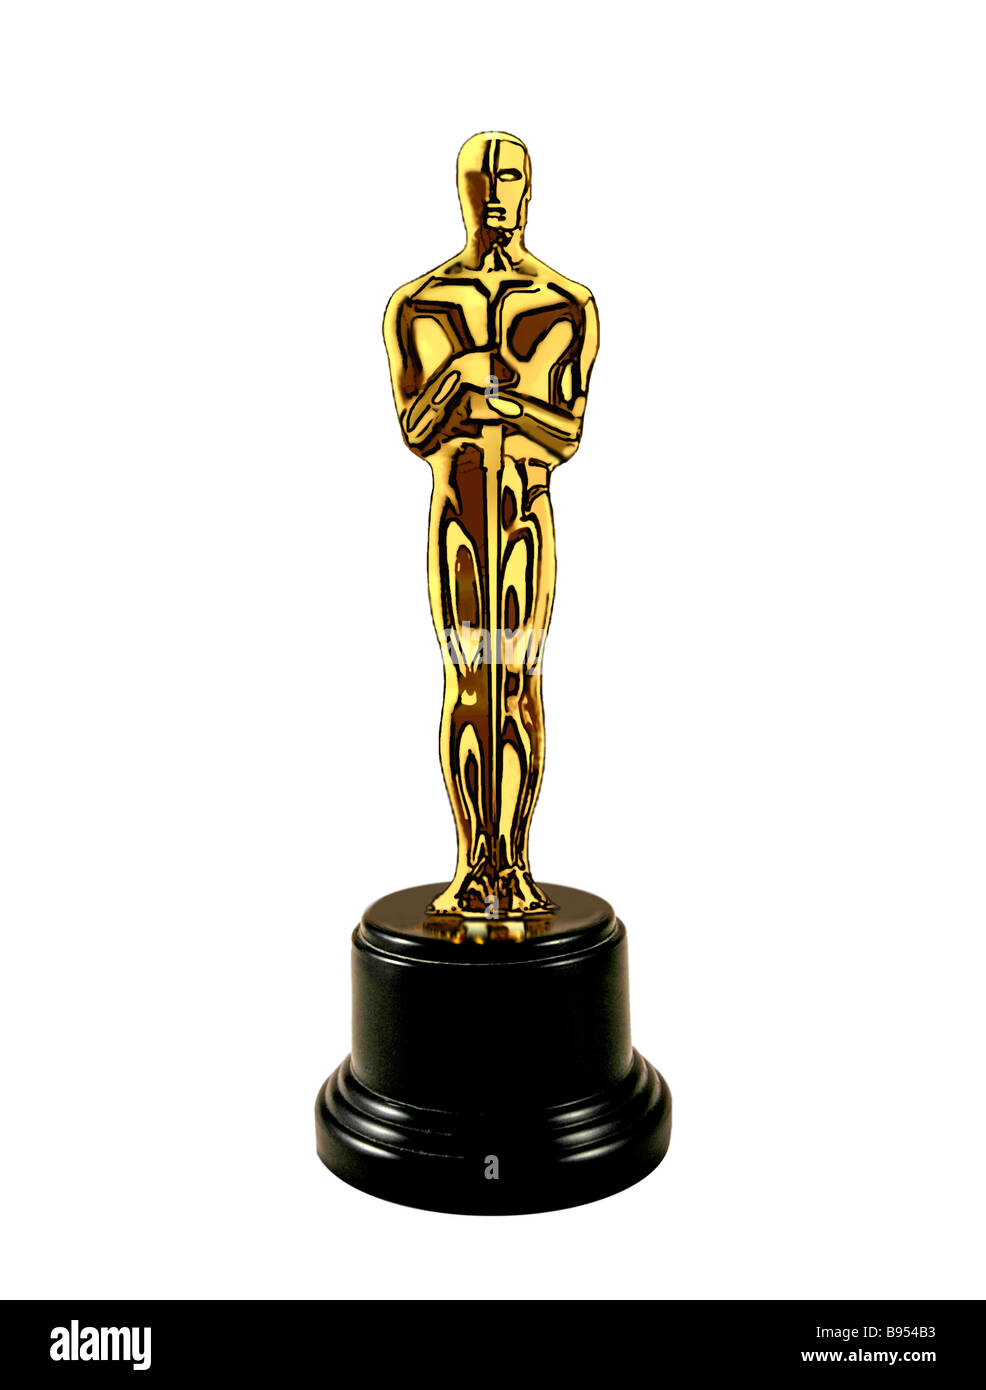 Replica of an Oscar statue. Stock Photo